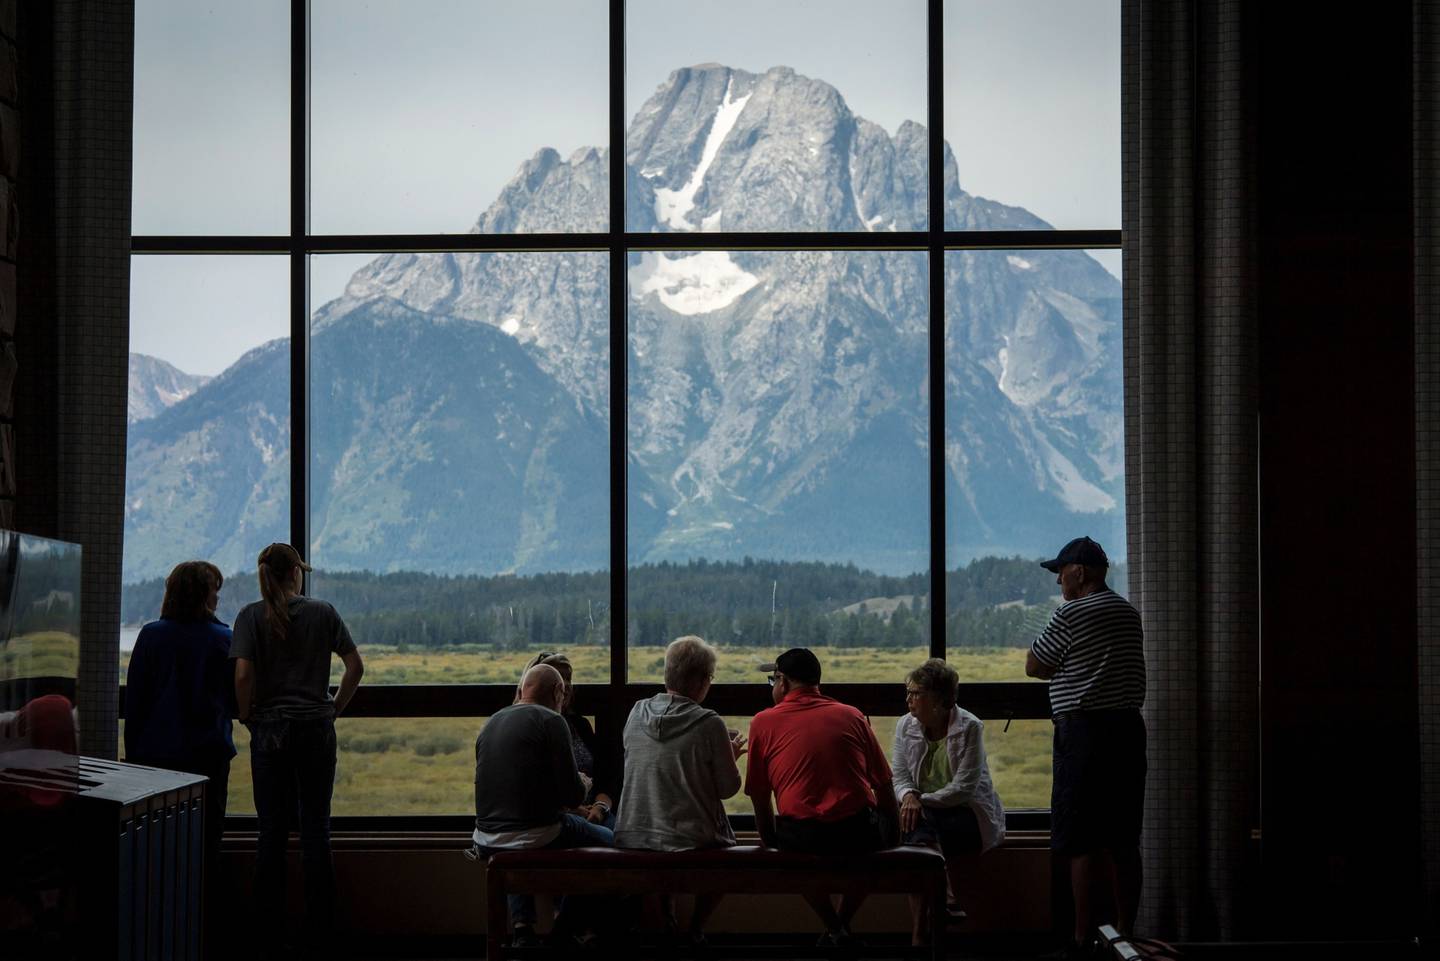 Los visitantes ven la cordillera del Parque Nacional Grand Teton desde el Jackson Lake Lodge en Moran, Wyoming, Estados Unidos, el jueves 22 de agosto de 2019. Fotógrafo: David Paul Morris/Bloomberg